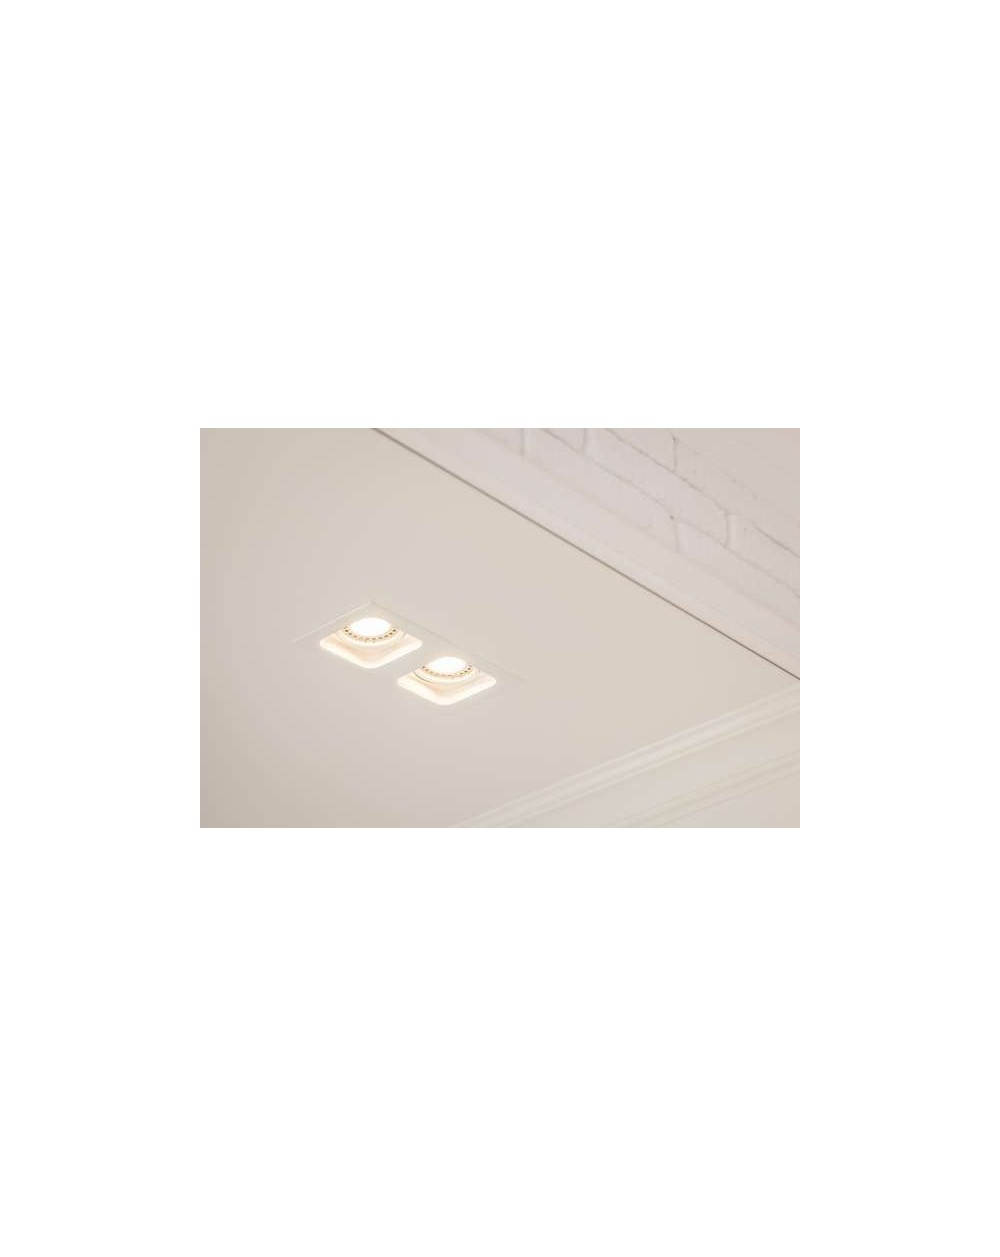 Lampa sufitowa DOUBLE miniQuad MR16 WP - Mistic Lighting oprawa wpuszczana prostokątna downlight do zabudowy w sufitach biała